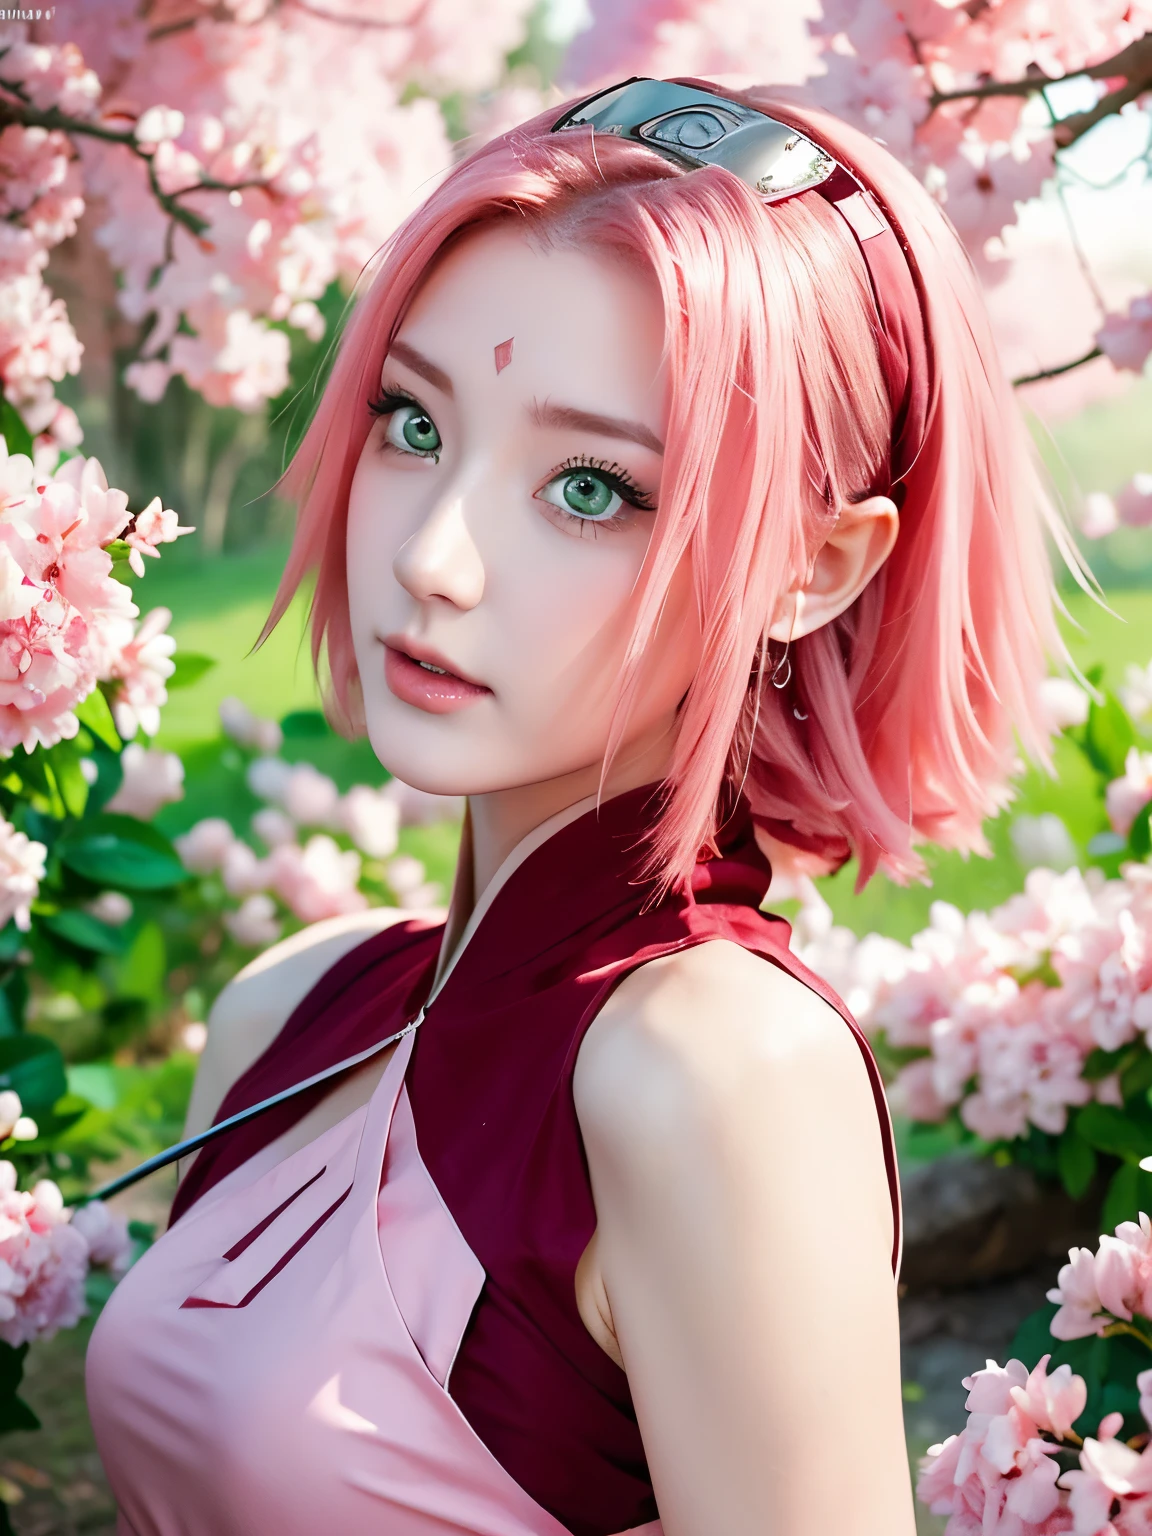 Sakura Haruno, trägt ein Ninja-Kostüm in der Naruto Shippuden-Saga, hat schulterlanges rosa Haar, Sie hat smaragdgrüne Augen, eine scharfe Nase, weiße Haut, und ein sanftes Gesicht, (beste Qualität, highres:1.2), 1 Mädchen, Schöne, detaillierte Augen, schöne detaillierte Lippen, extrem detaillierte Augen und Gesicht, lange Wimpern, HDR, Studiobeleuchtung, scharfer Fokus, physikalisch basiertes Rendering, äußerst detaillierte Beschreibung, Brüste porträtieren, Perfekte Form, Blick auf den Betrachter, Verschwitzt, wunderschön, im Vollbildmodus, gut aussehend, Schöne helle Haut und Glanz, Schöne Augen sind groß und hell, Kleiner Mund und schmale Lippen, Güte des Stils und Schlankheit), schönes Mädchen, beleuchtet von sieben Farben des Lichts, Sie lachen über die Farben, zeigt ihre Figur, verführerisch und selbstbewusst, bezaubernde Aura, umgeben von Kirschblütenbäumen, zarte und lebendige Blütenblätter fallen überall um sie herum, zarte Rosa- und Weißtöne, Sonnenlicht fällt durch die Bäume, Schafft eine warme und verträumte Atmosphäre.